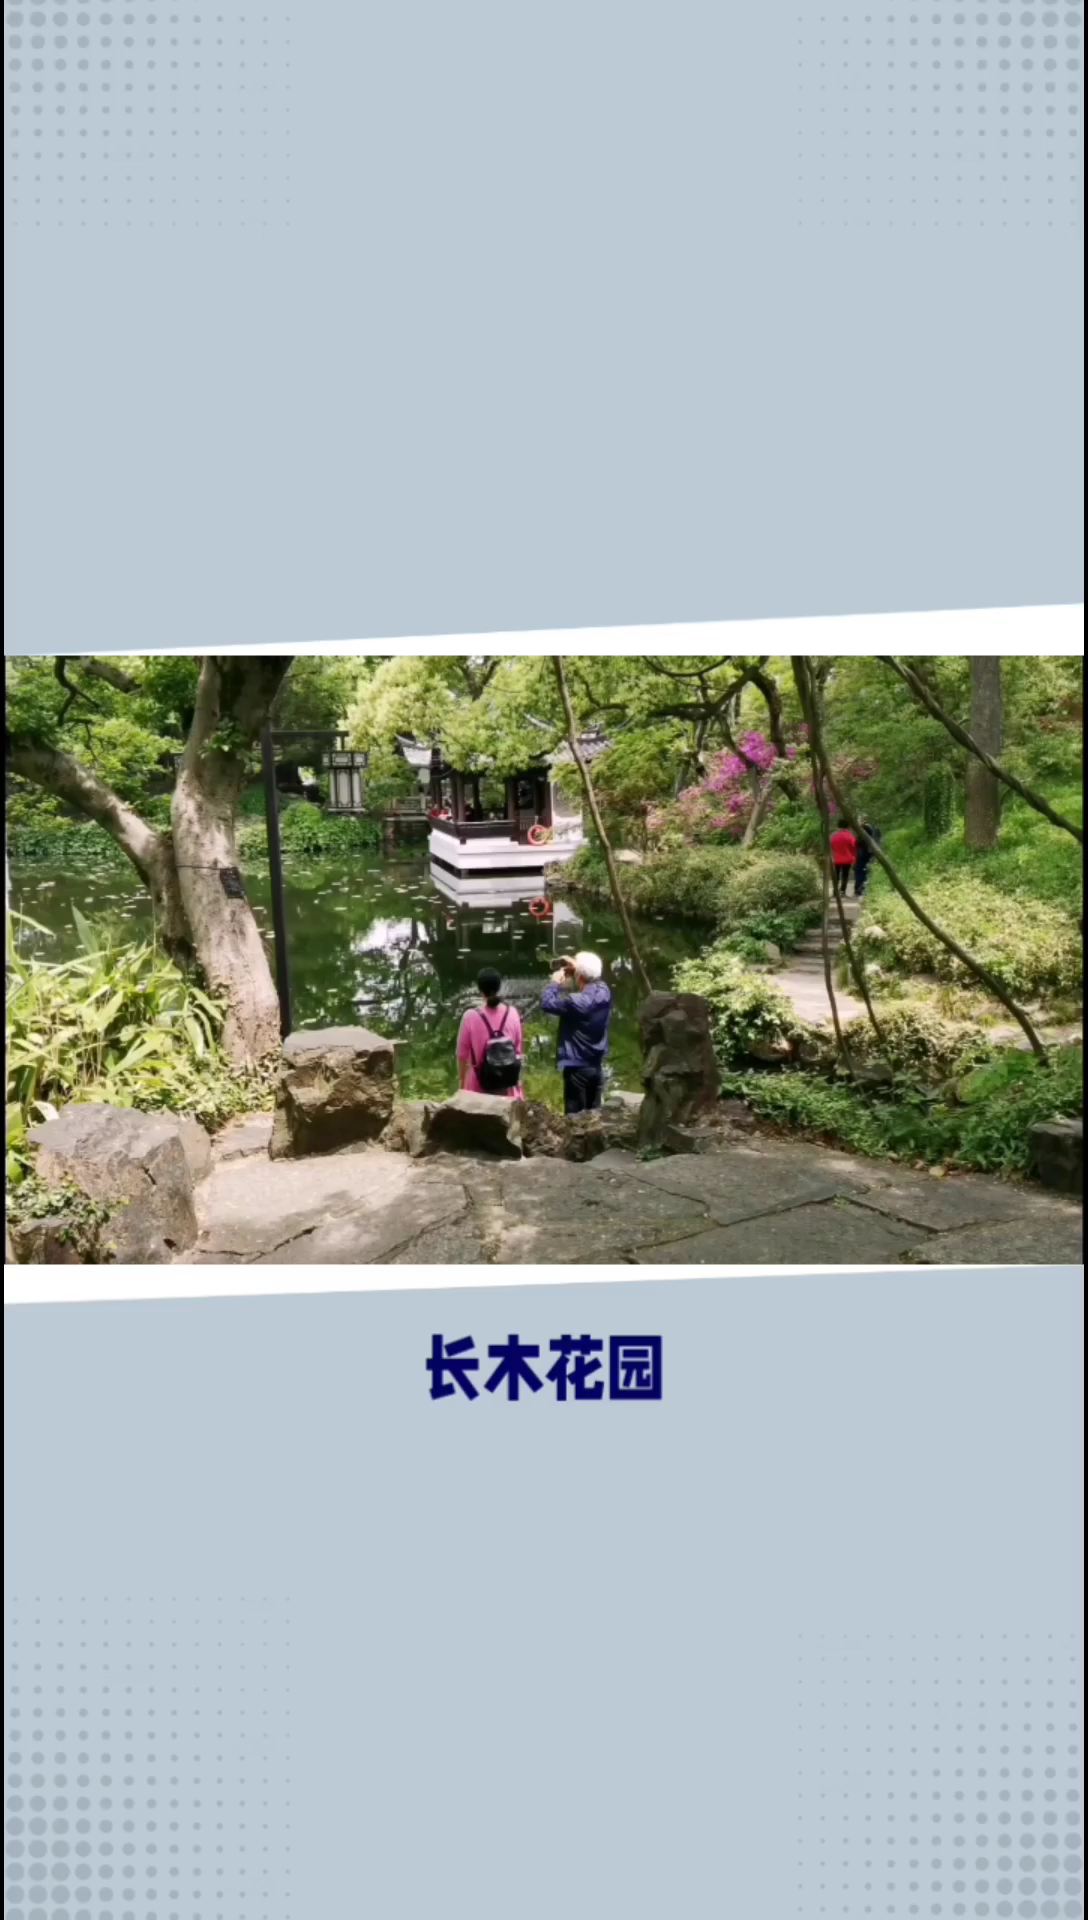 长木花园：感受江南园林艺术的魅力